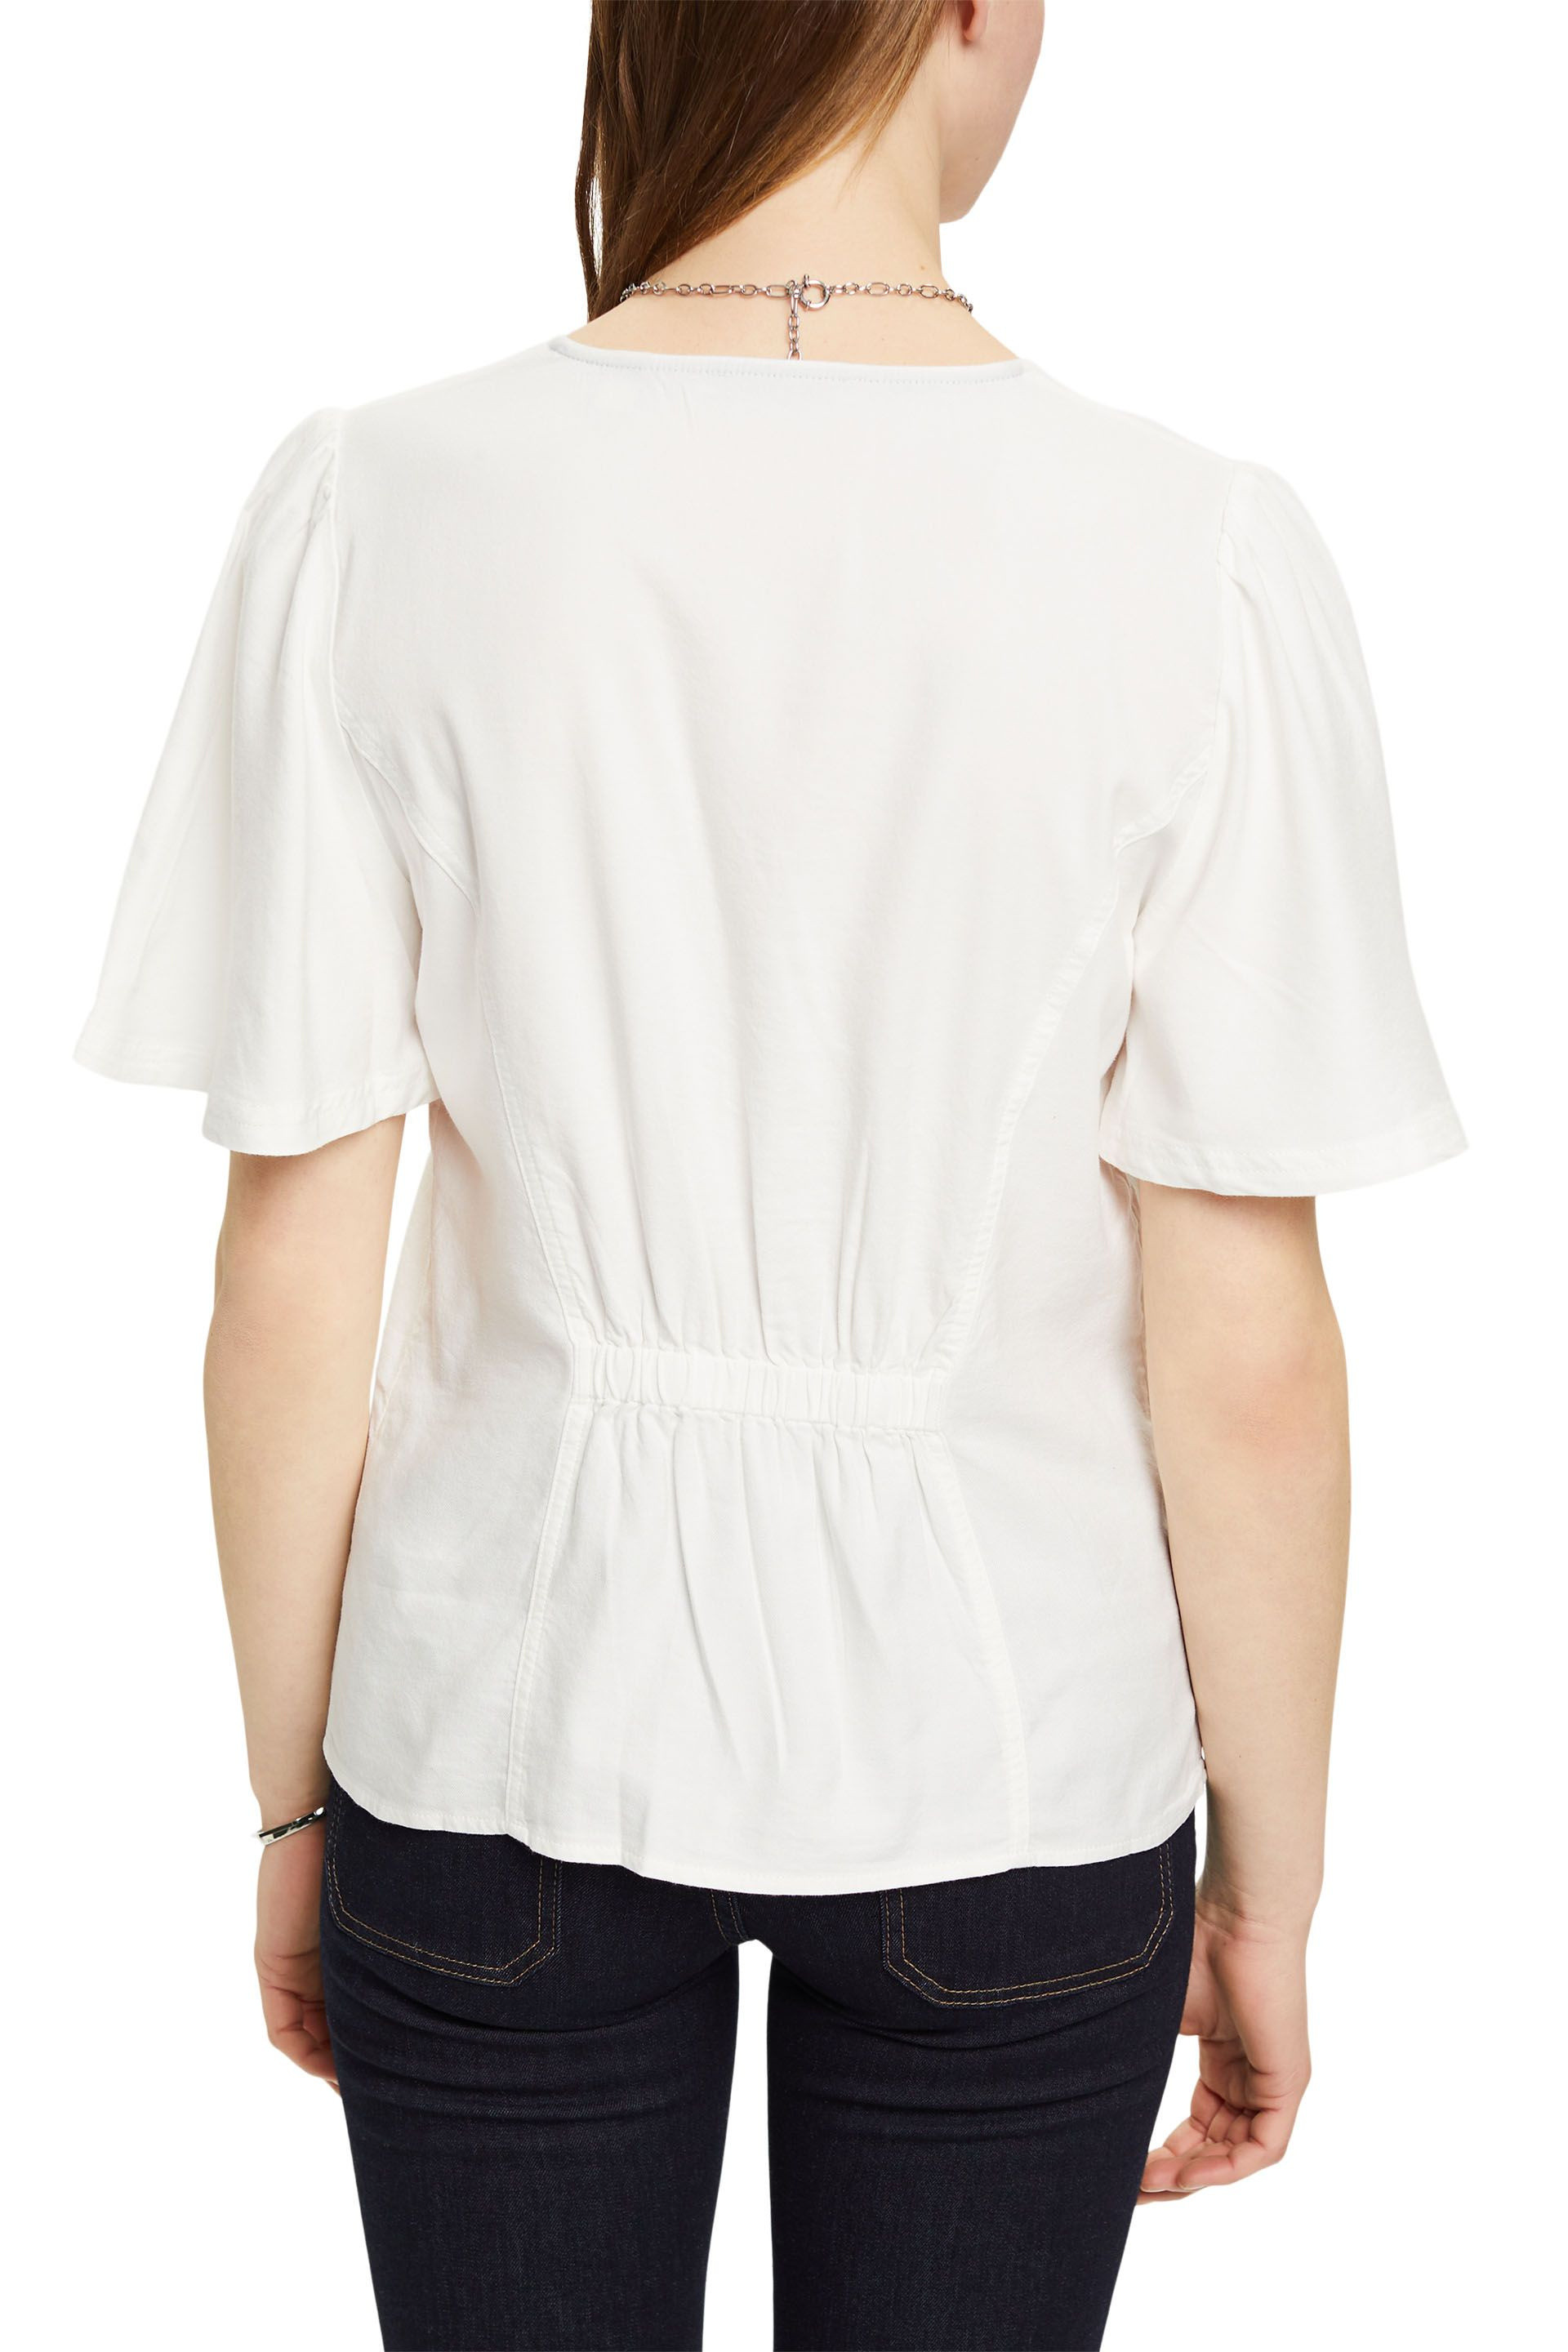 Esprit - V-neck blouse, White, large image number 2